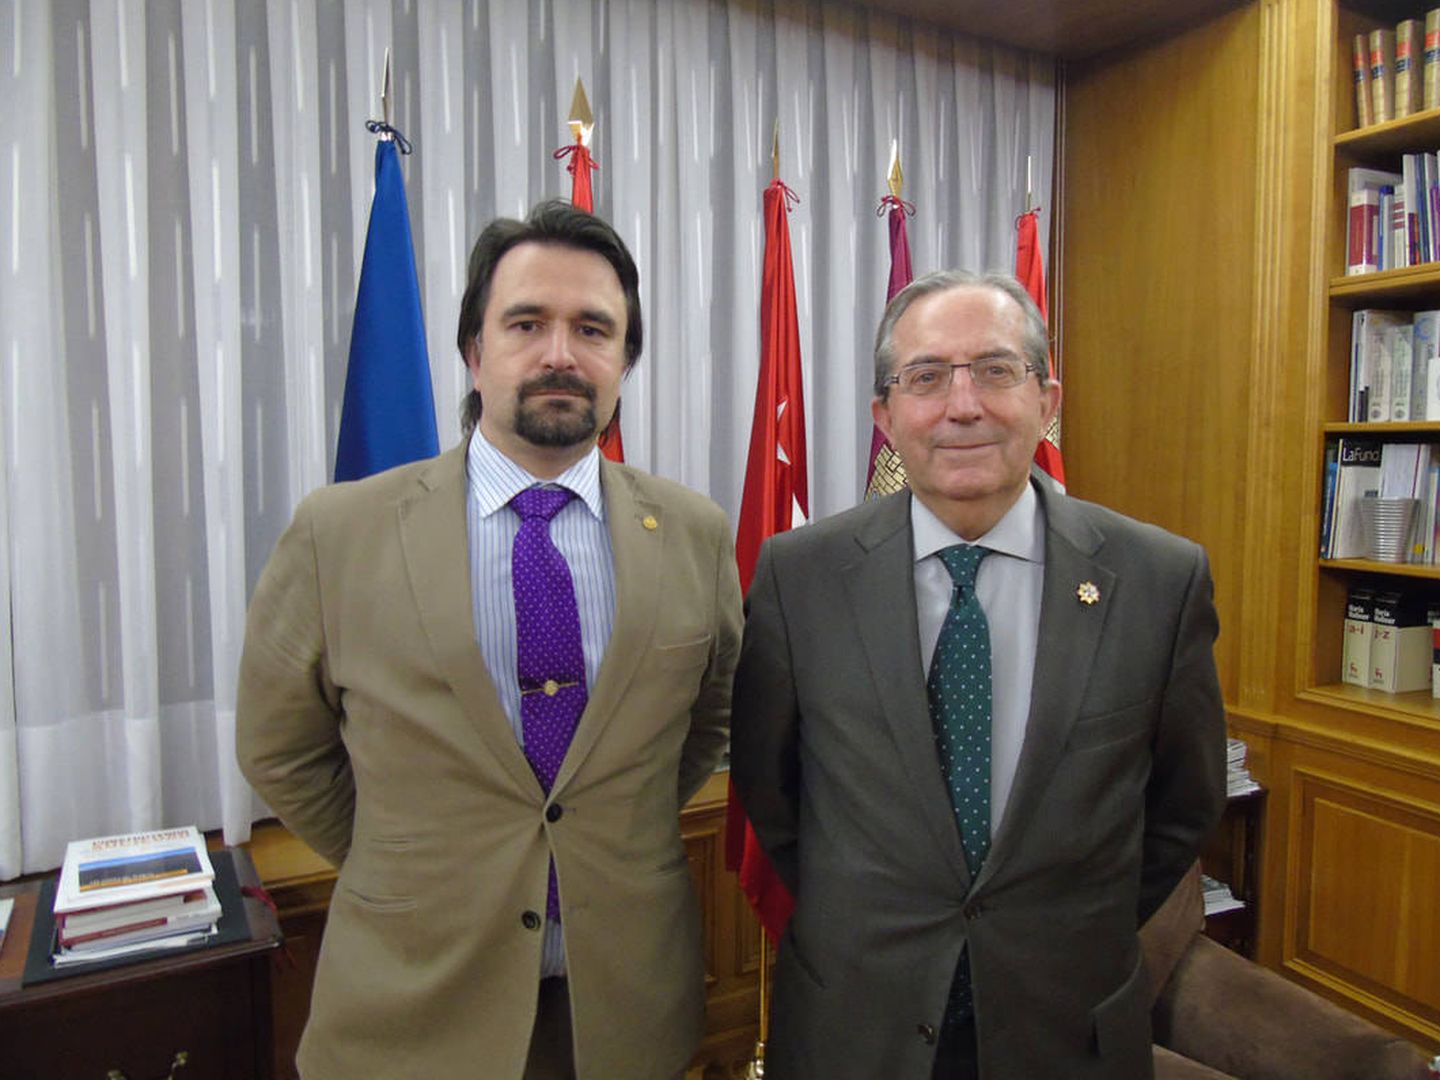 César Franco y Francisco Cal, decano y vicedecano del Colegio de Ingenieros Industriales de Madrid.